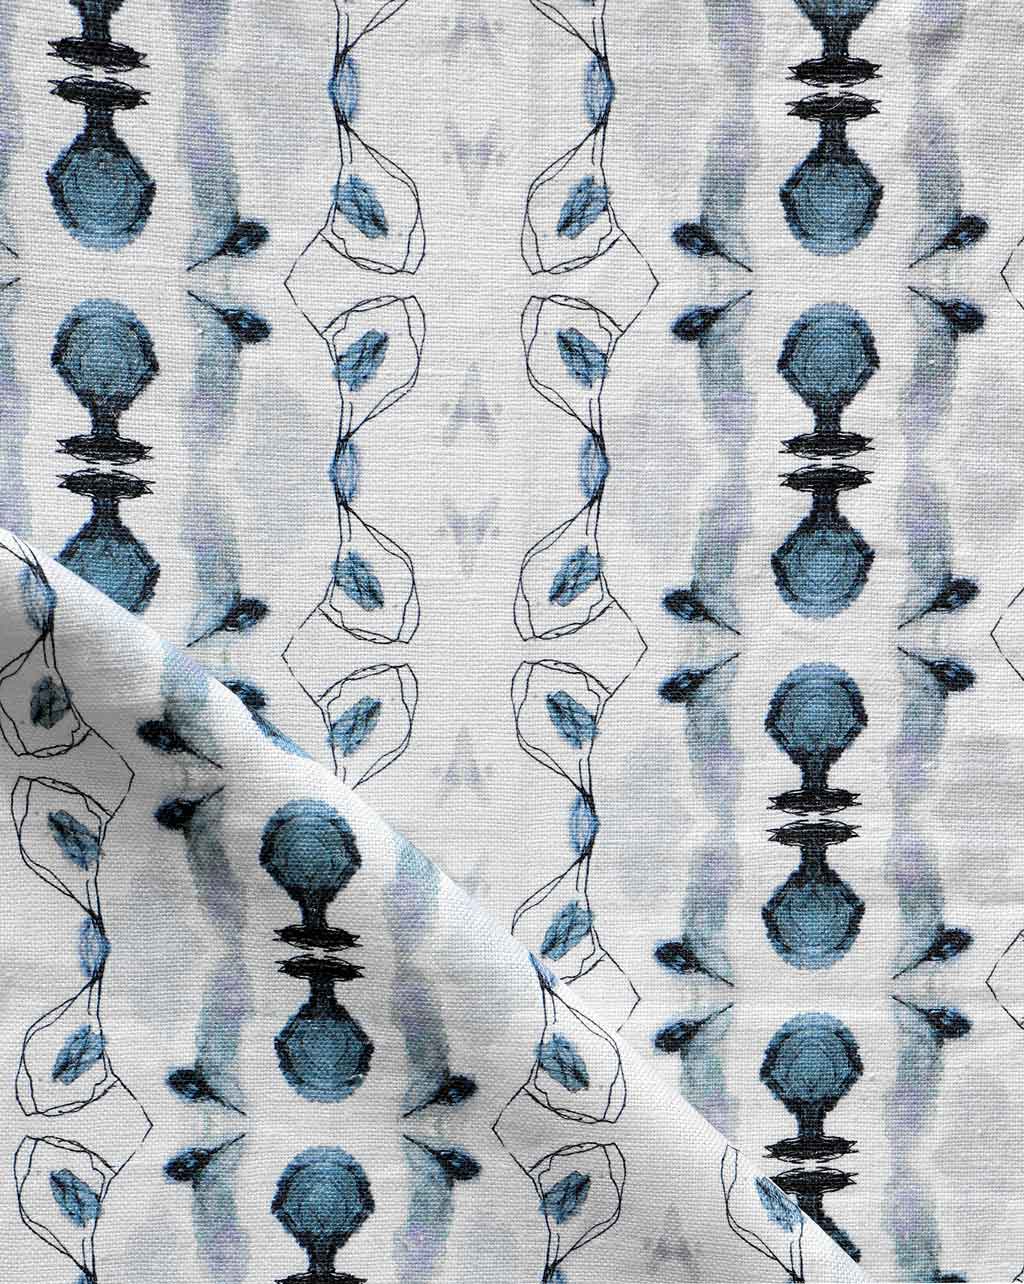 A Bali Stripe Fabric Indigo with an abstract design